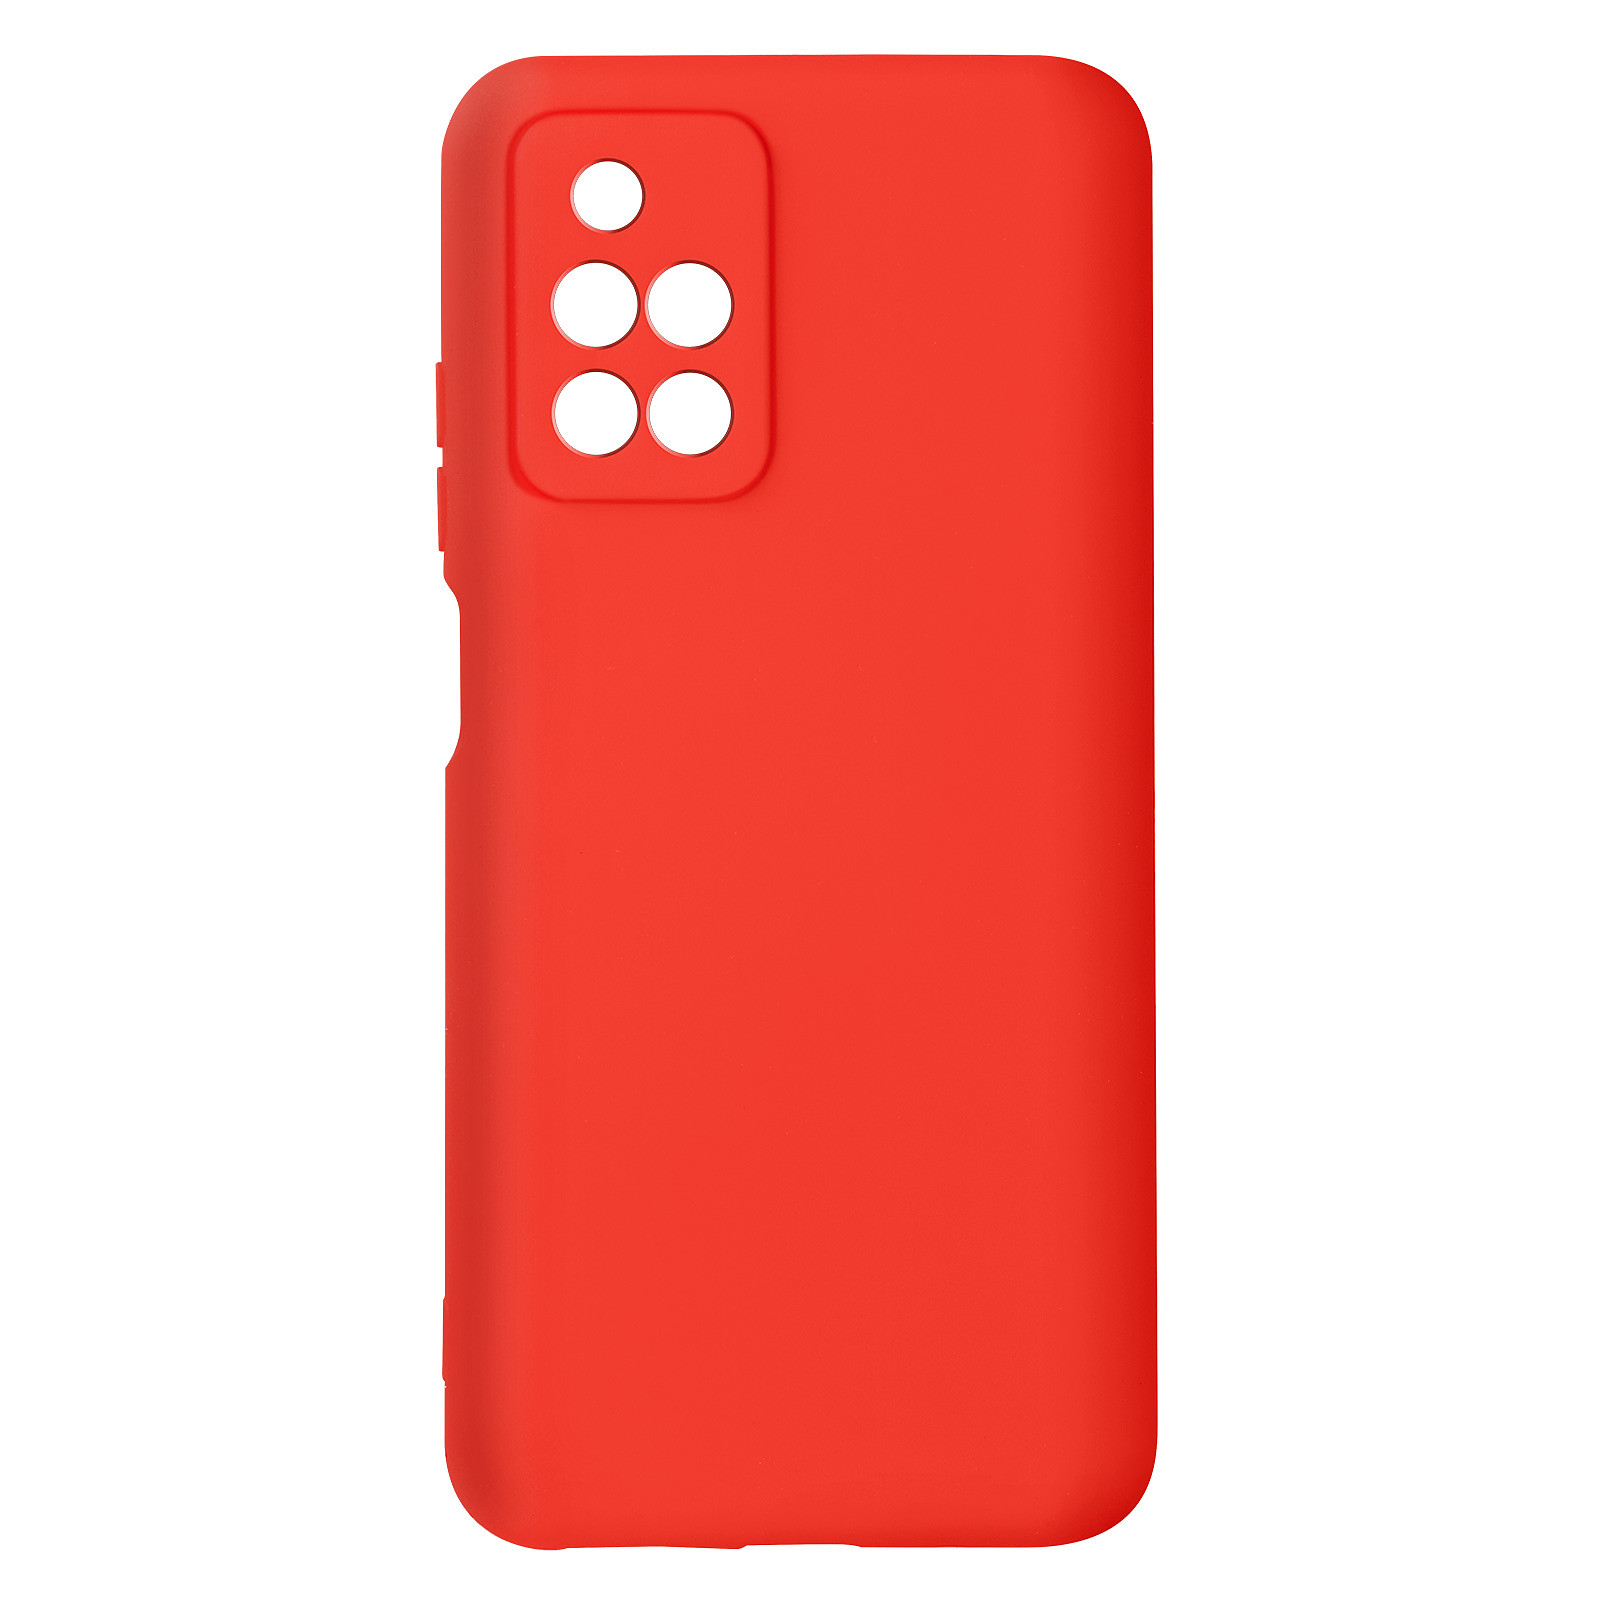 Avizar Coque pour Xiaomi Redmi 10 Silicone Semi-rigide Finition Soft-touch Fine Rouge - Coque telephone Avizar